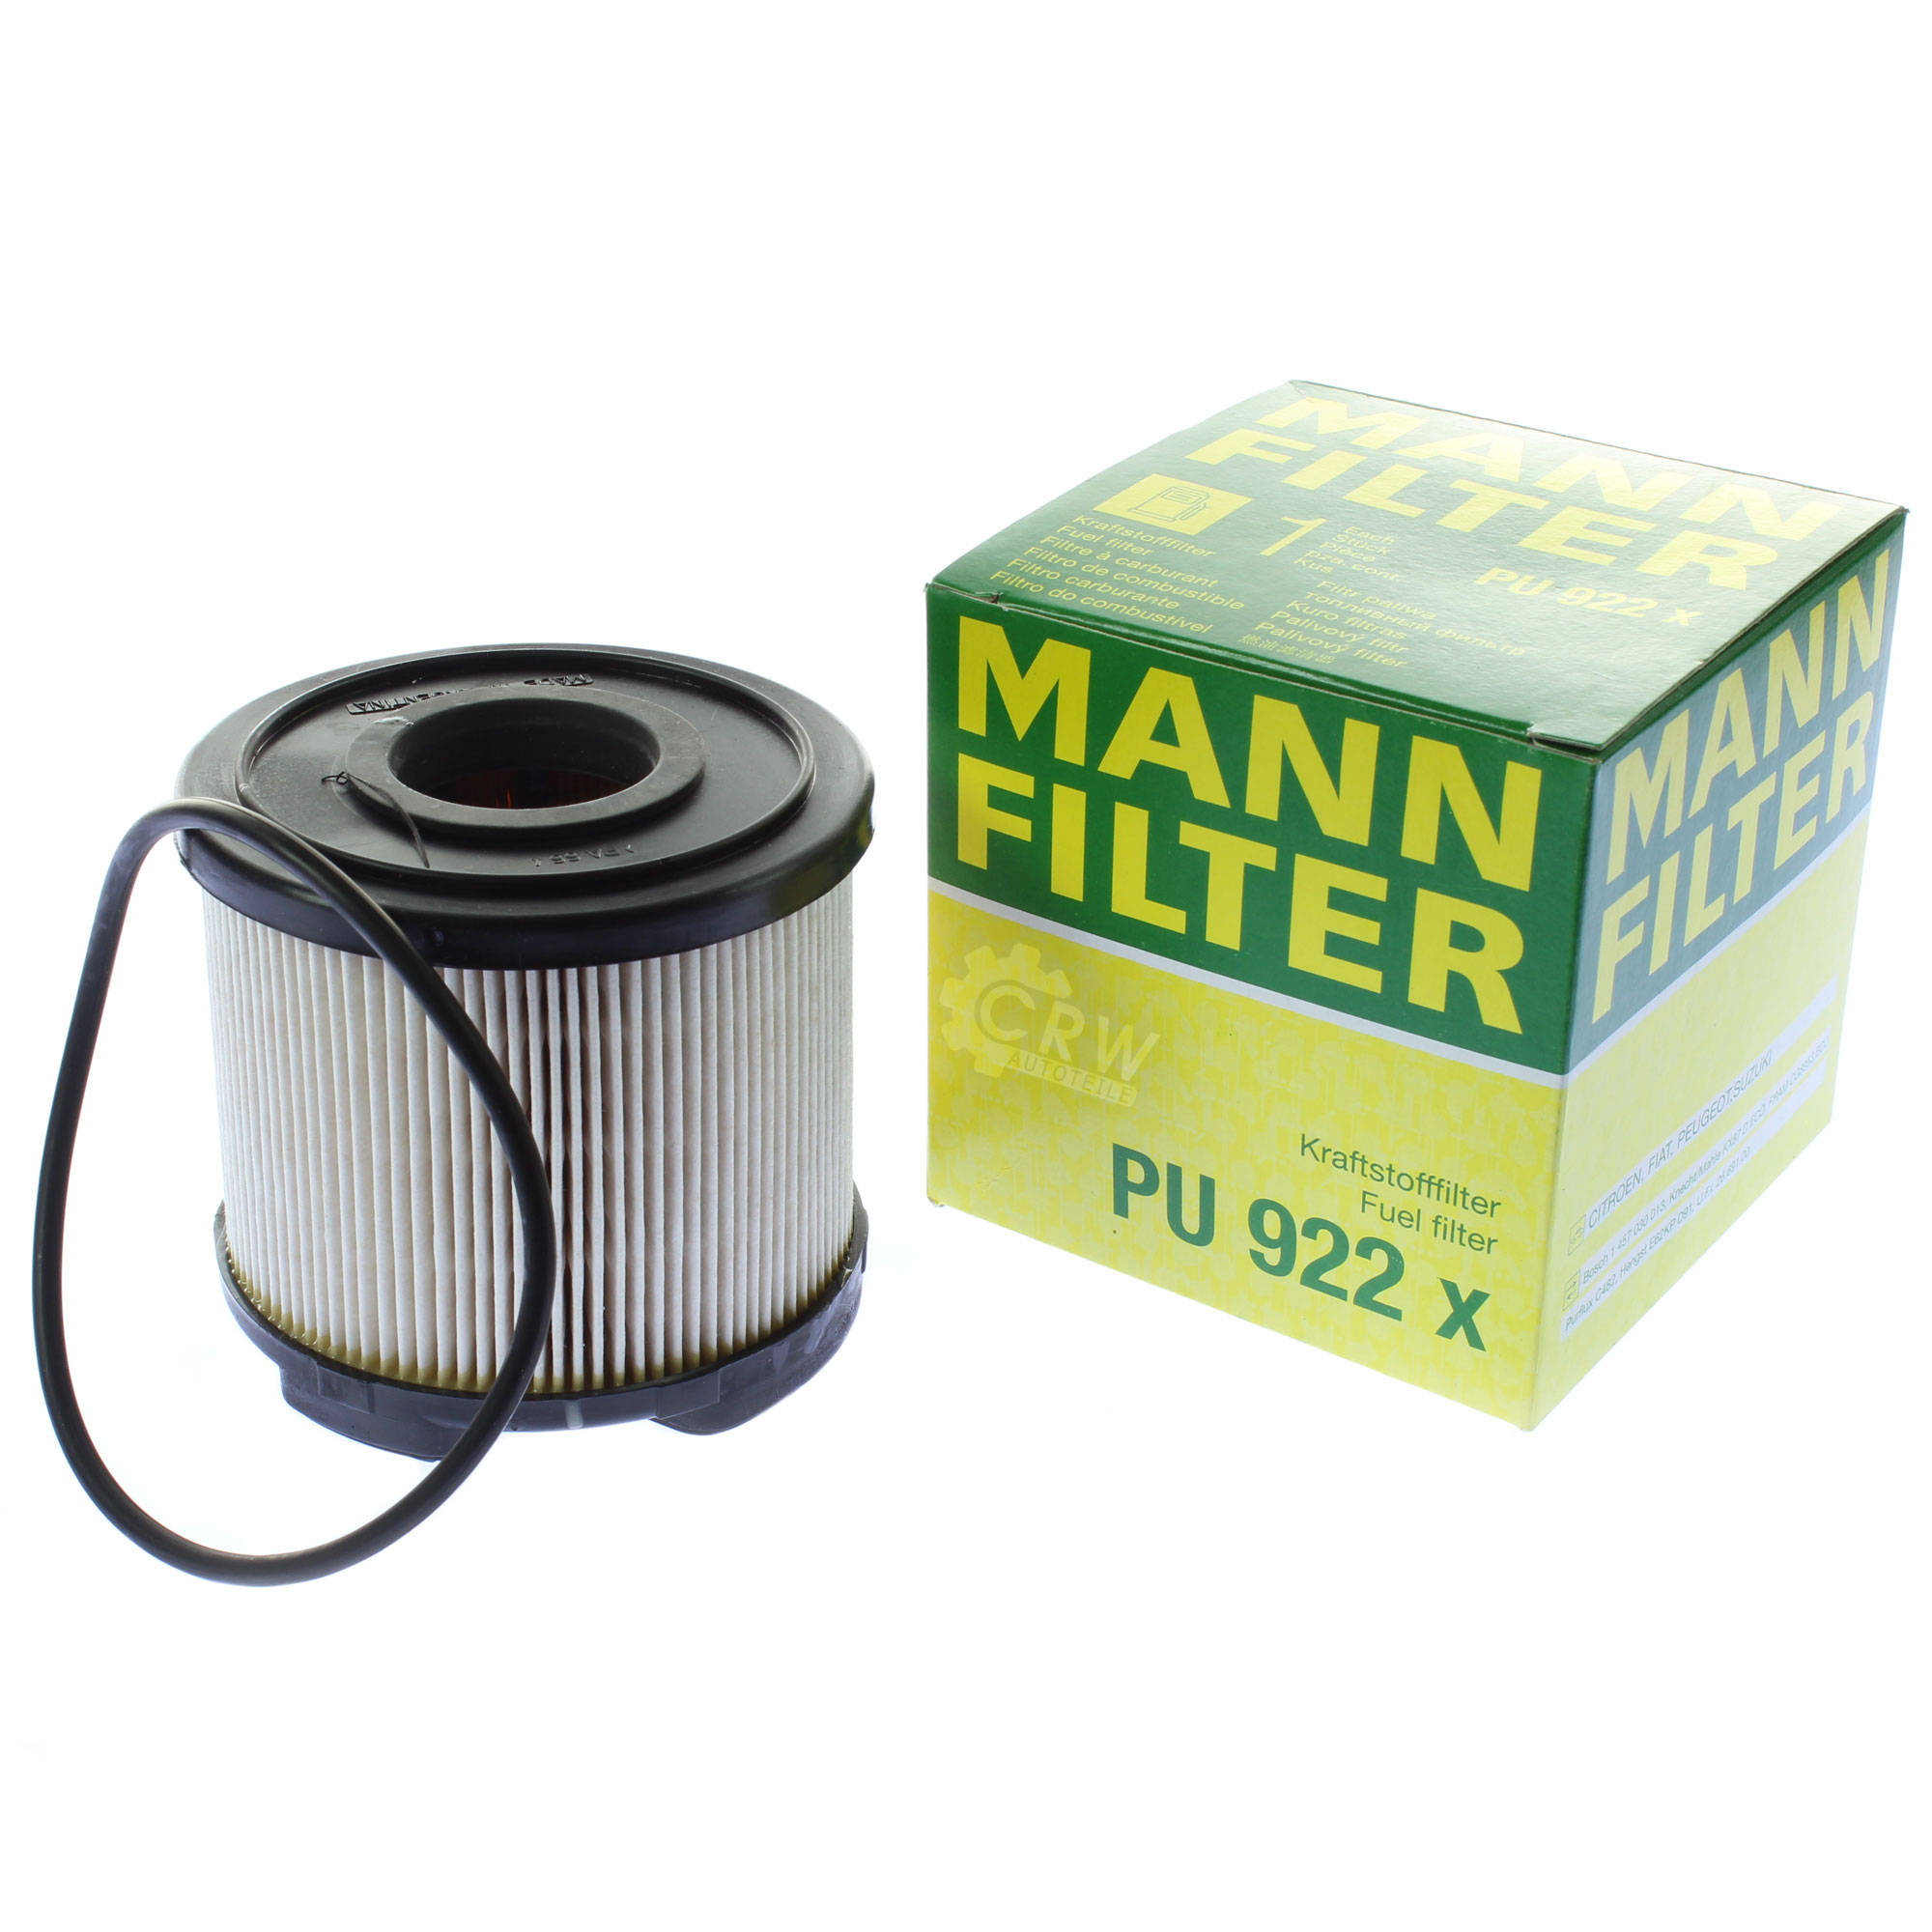 MANN-FILTER Kraftstofffilter PU 922 x Fuel Filter